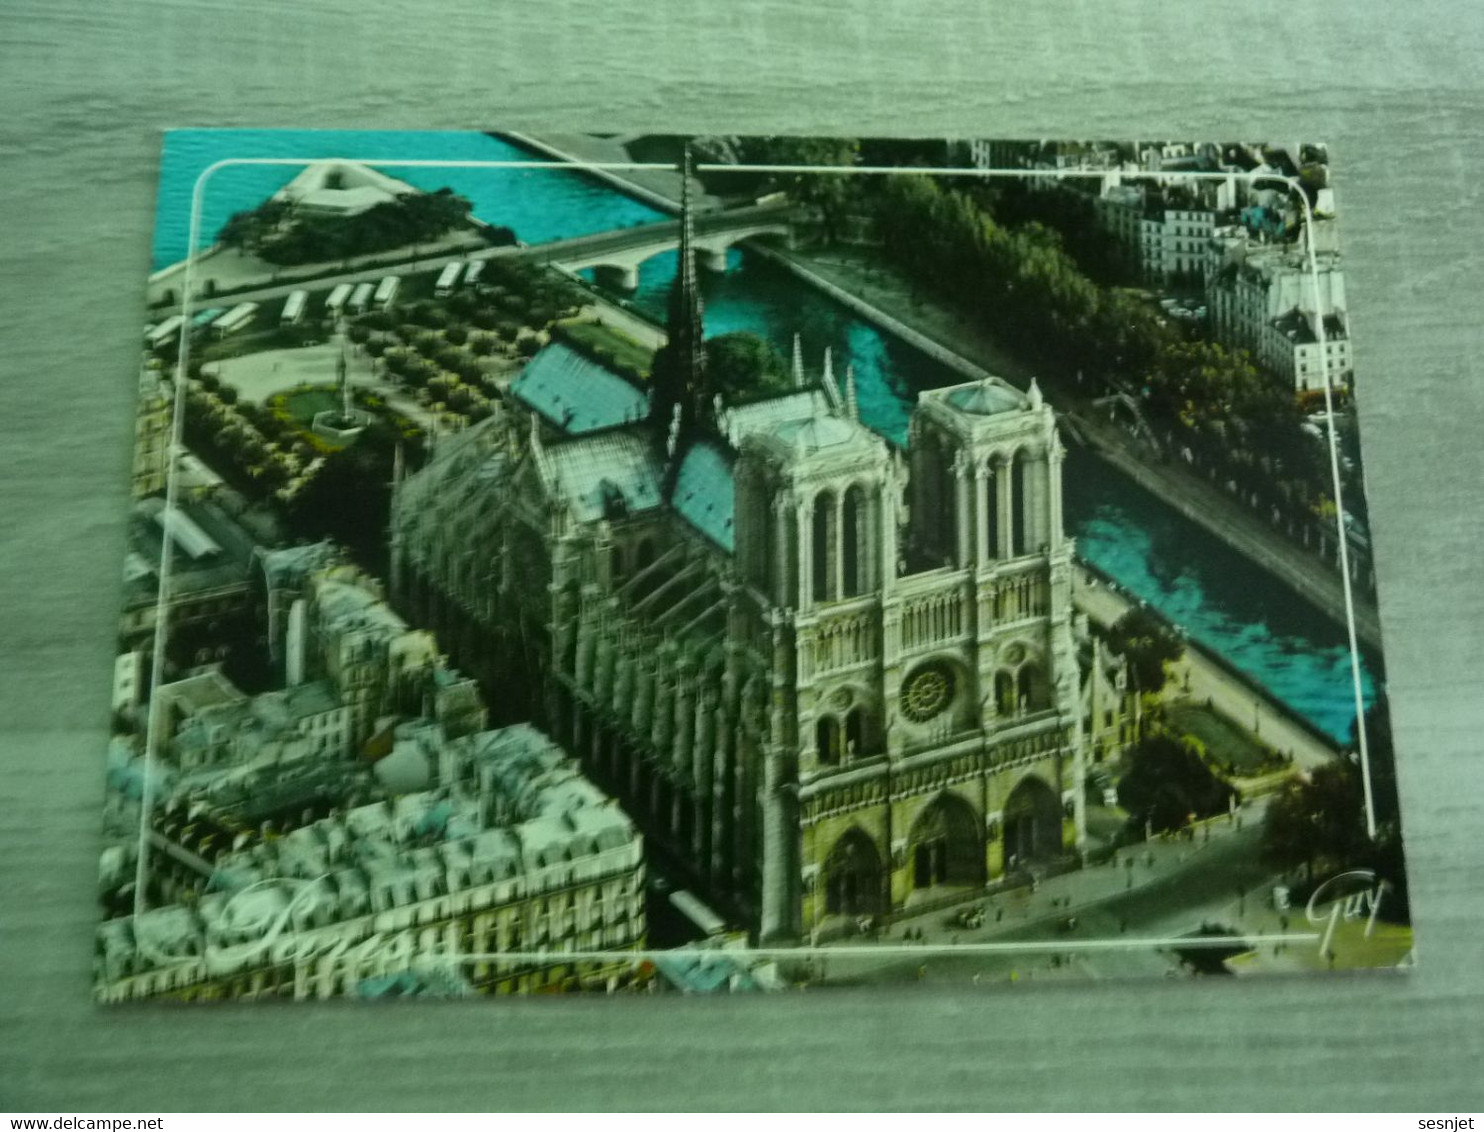 Paris - Vue Aérienne De La Cathédrale Notre-Dame - Editions Guy - Production Leconte - Année 1990 - - Notre Dame De Paris